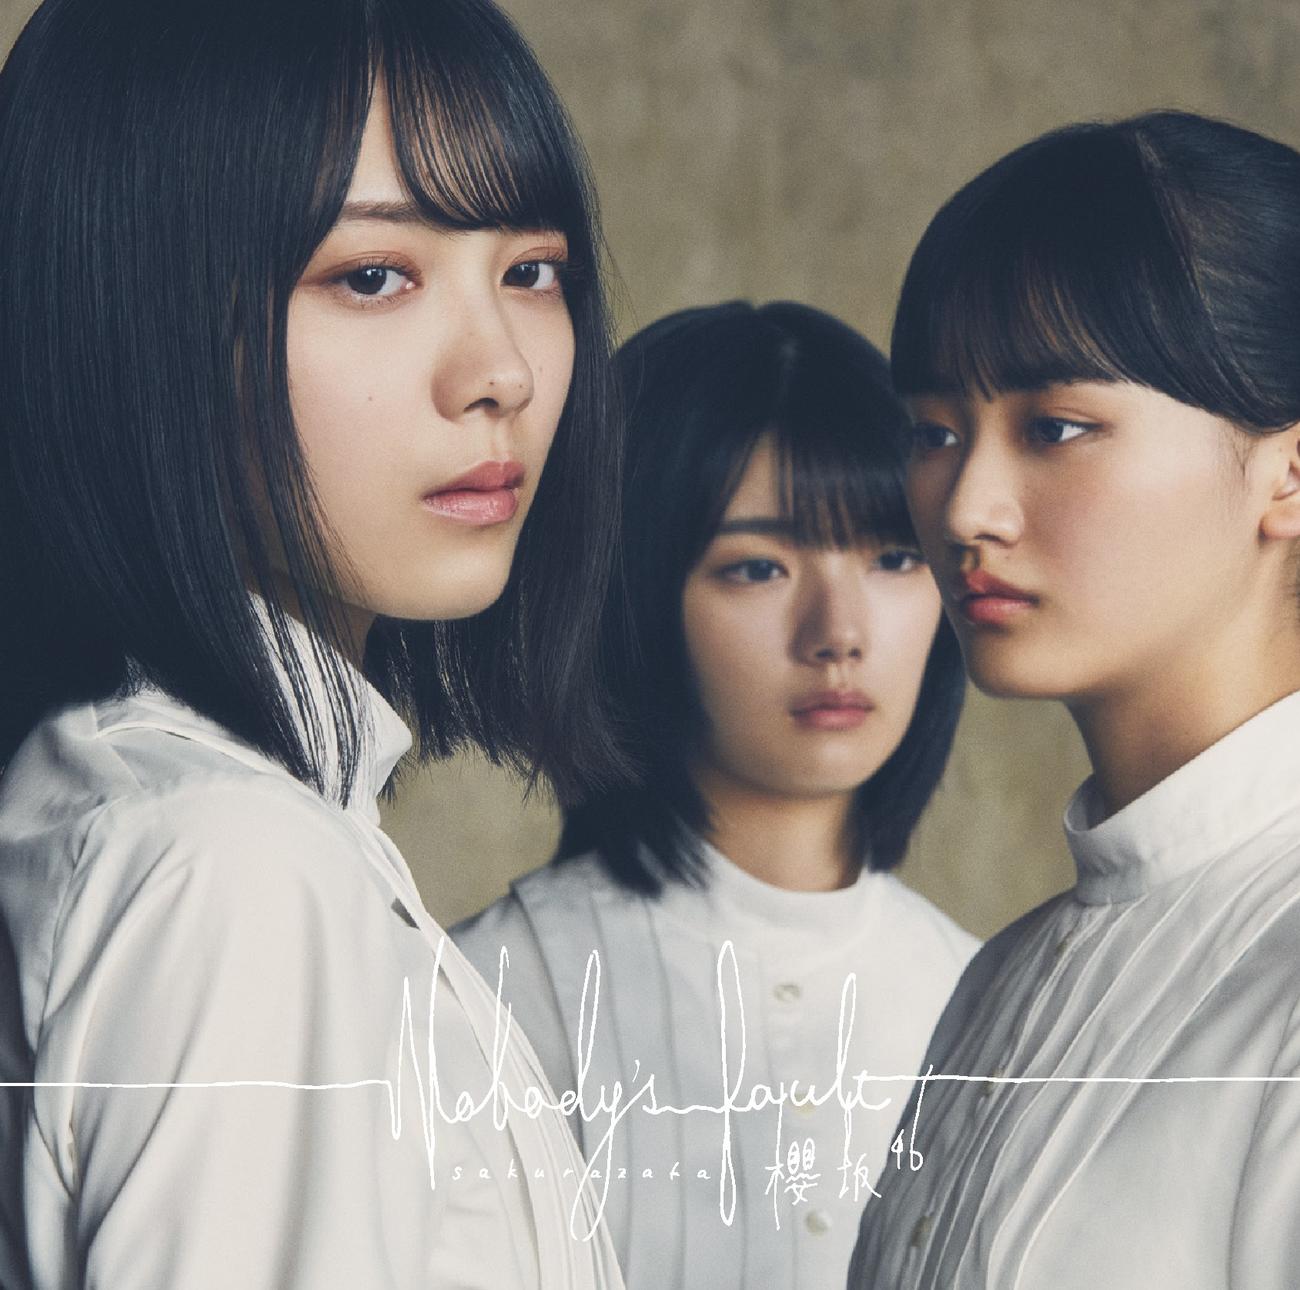 櫻坂46のシングル「Nobody’s　fault」のジャケット写真。左から森田ひかる、藤吉夏鈴、山崎天